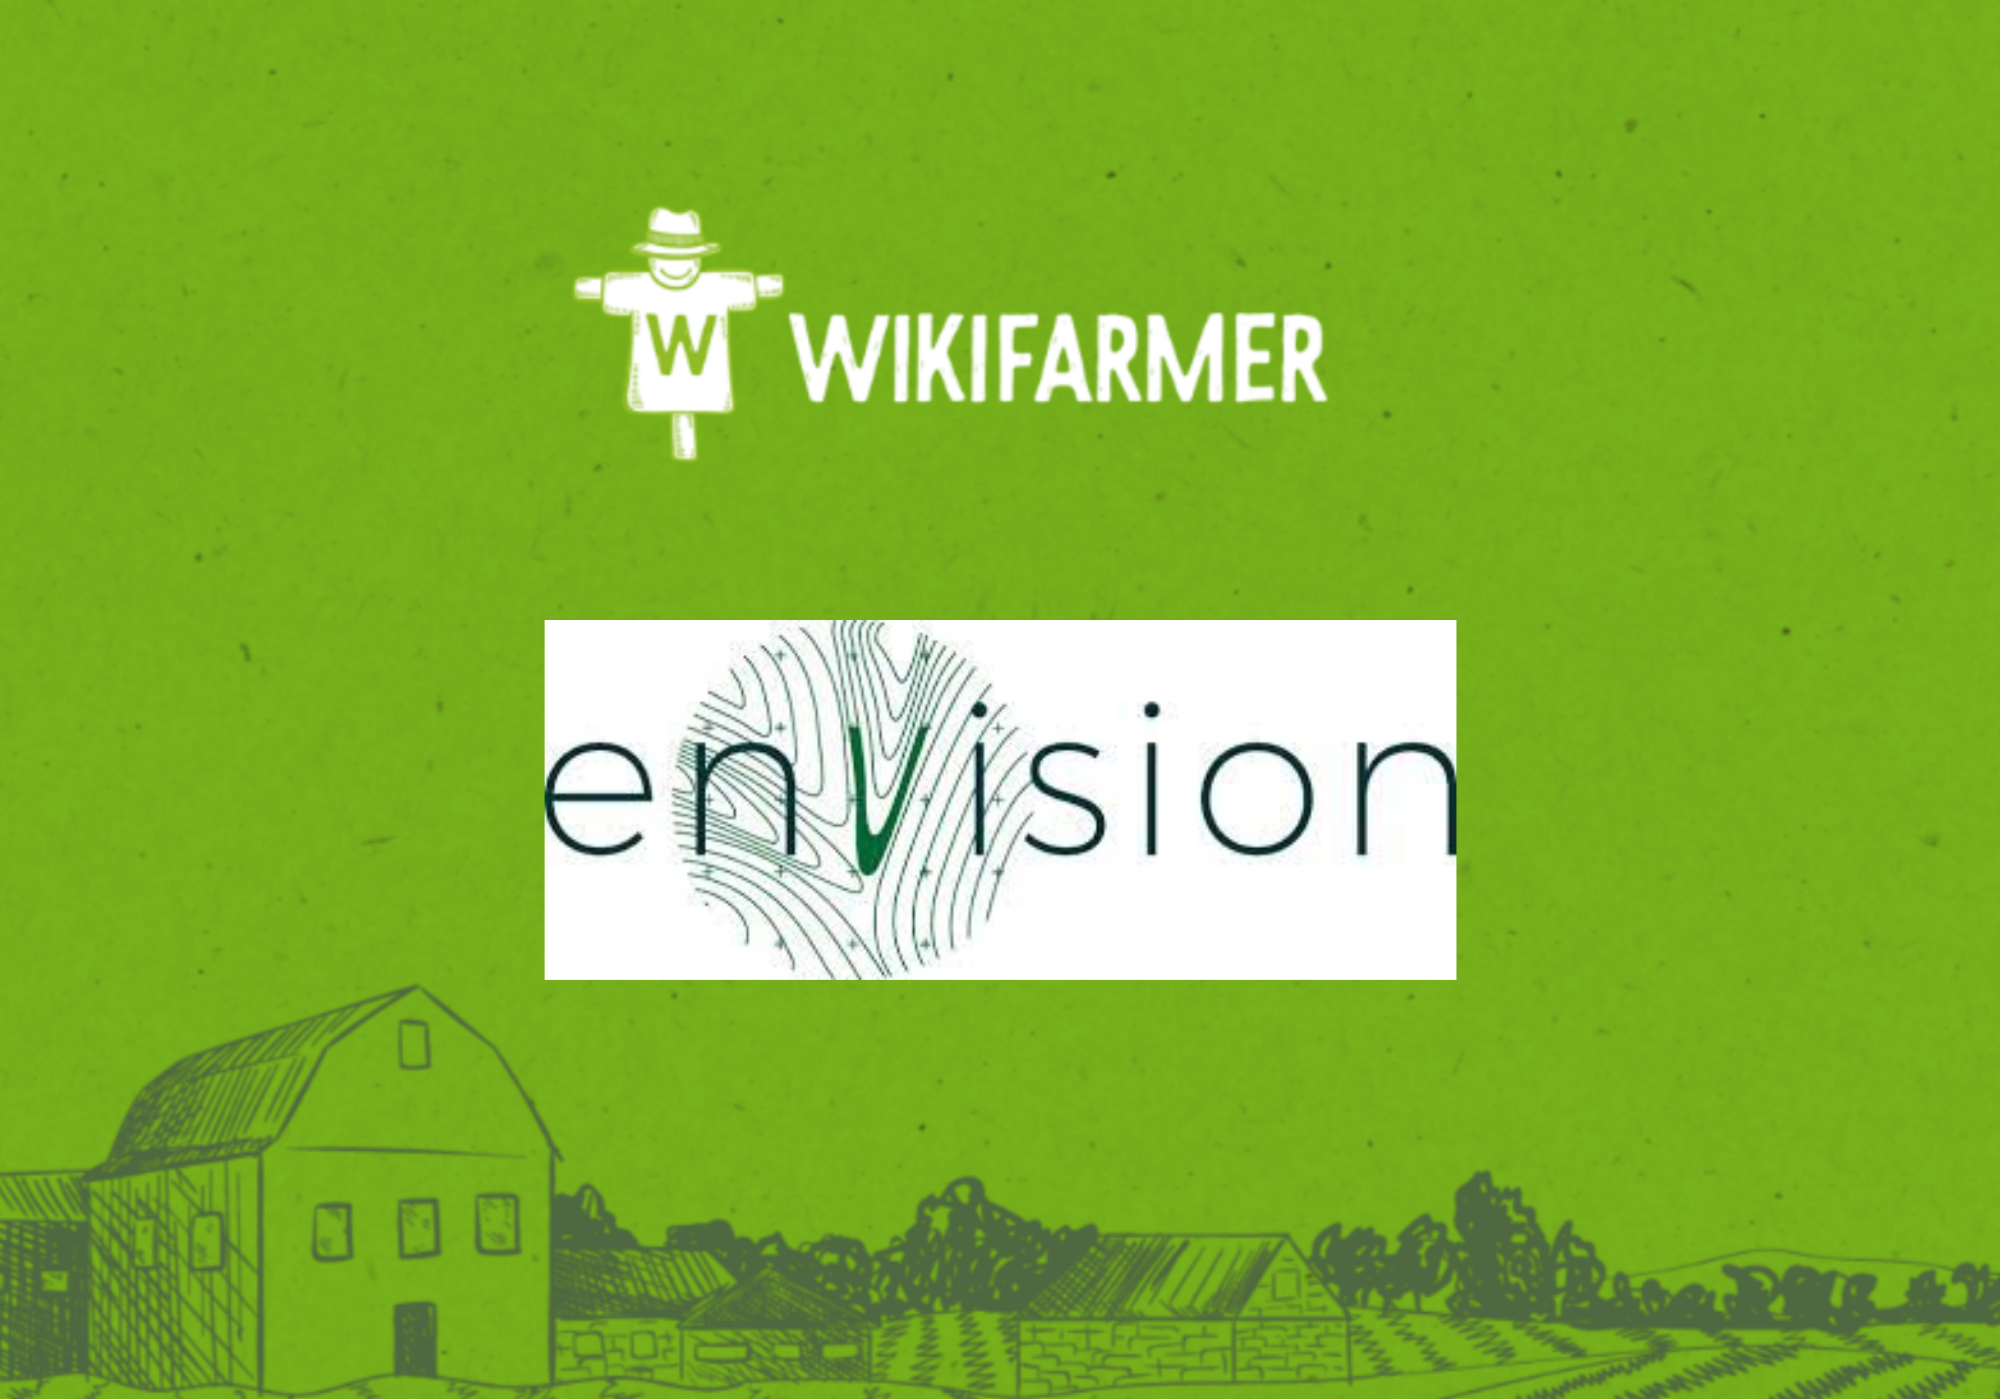 Partnership between Wikifarmer and ENVISION